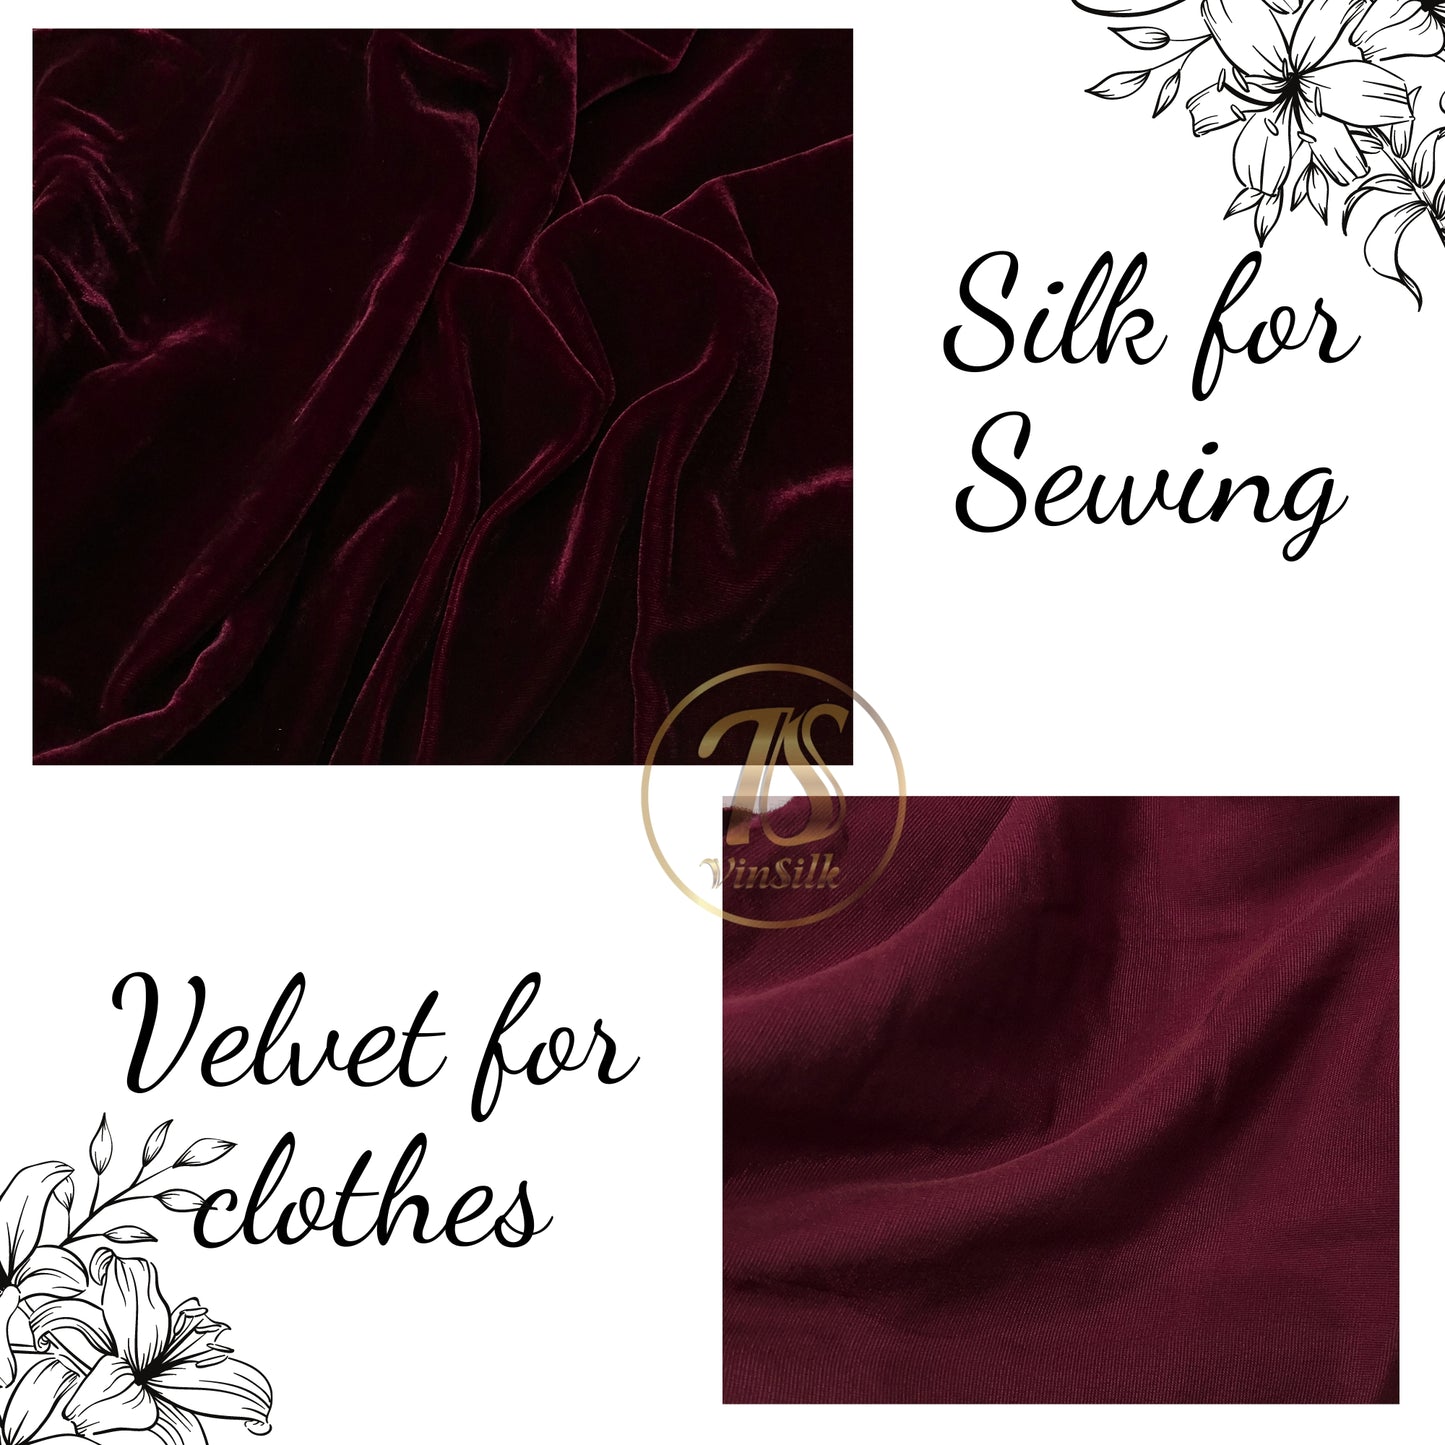 100% MULBERRY SILK VELVET fabric by the yard - Luxury Silk Velvet for Dress, Skirt, High End Garment - Silk apparel fabric - Dark red silk velvet